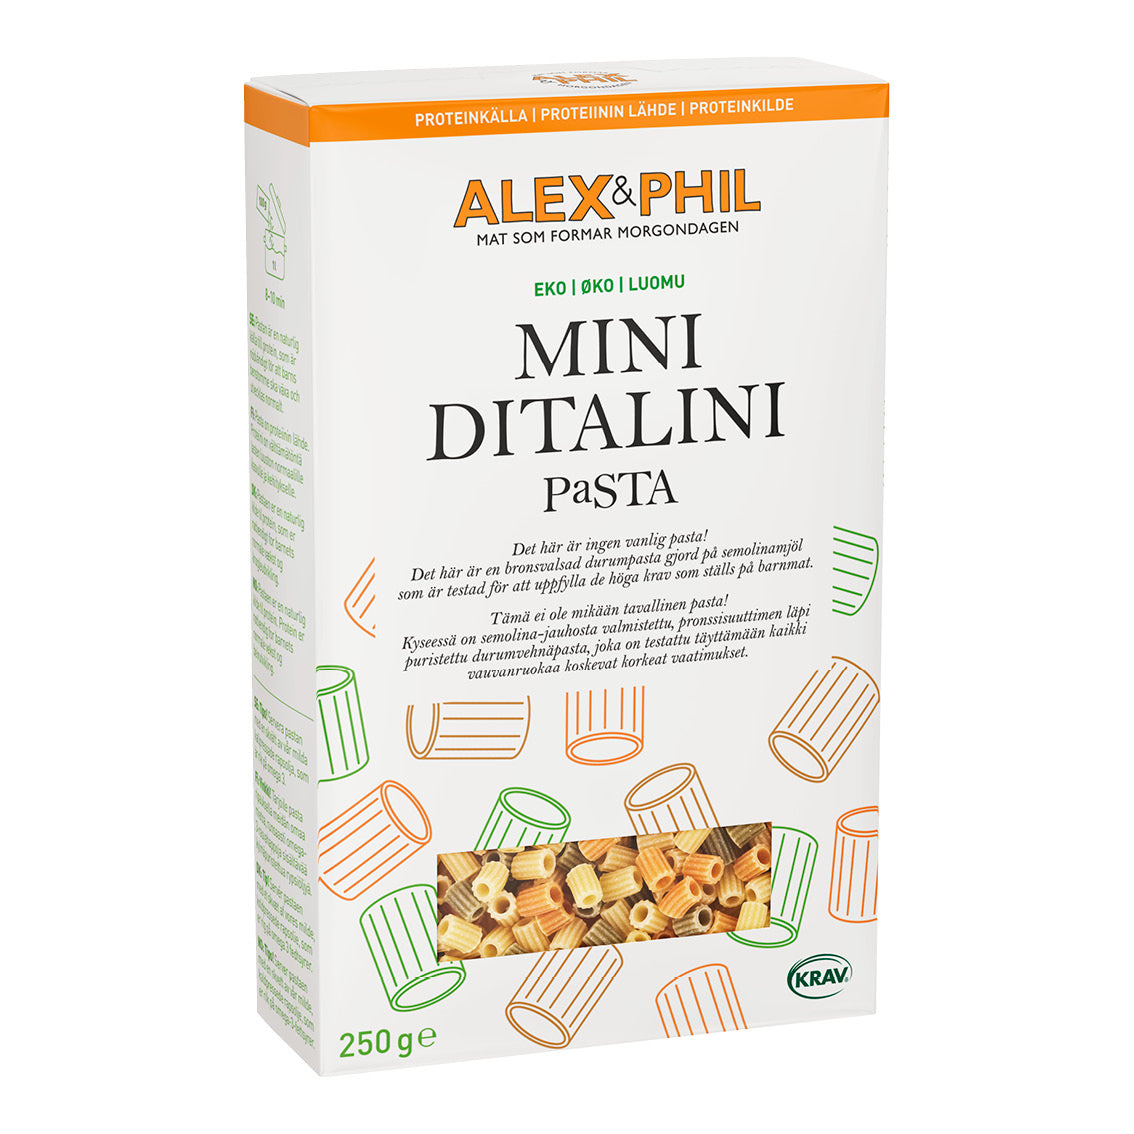 Alexphilfoods Pasta Mini Ditalini gjord på semolinamjöl och Bronsvalsad durumpasta för tillsatt protein.